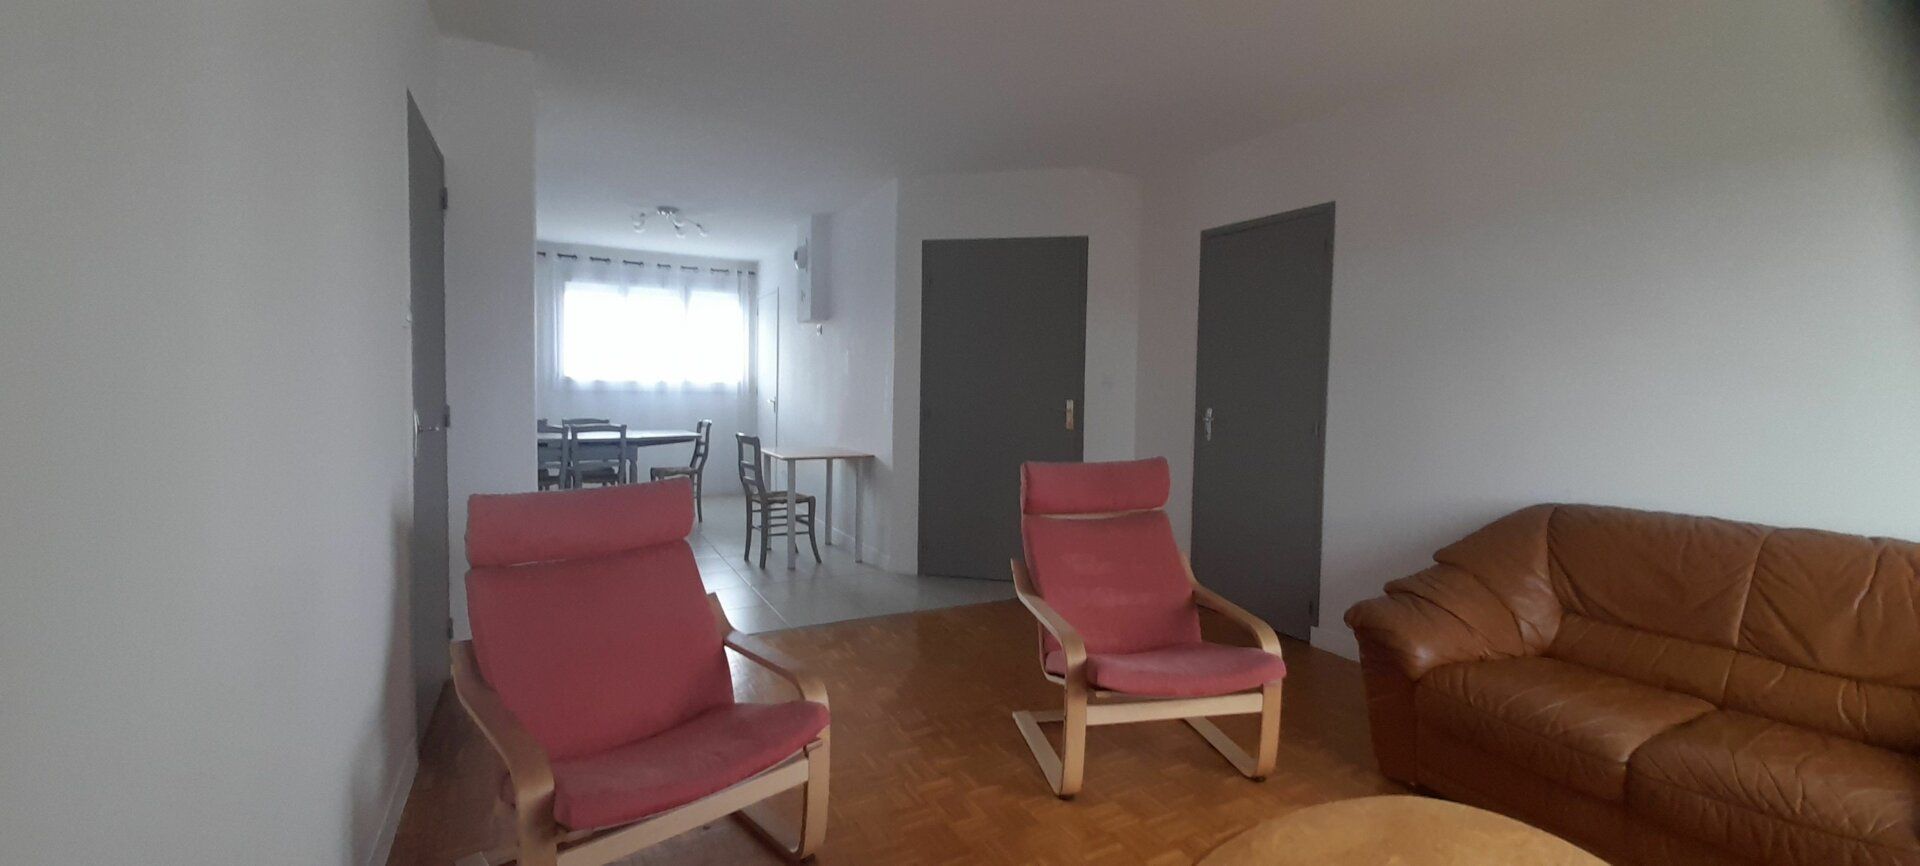 Appartement à vendre 3 67.05m2 à Bourg-en-Bresse vignette-4